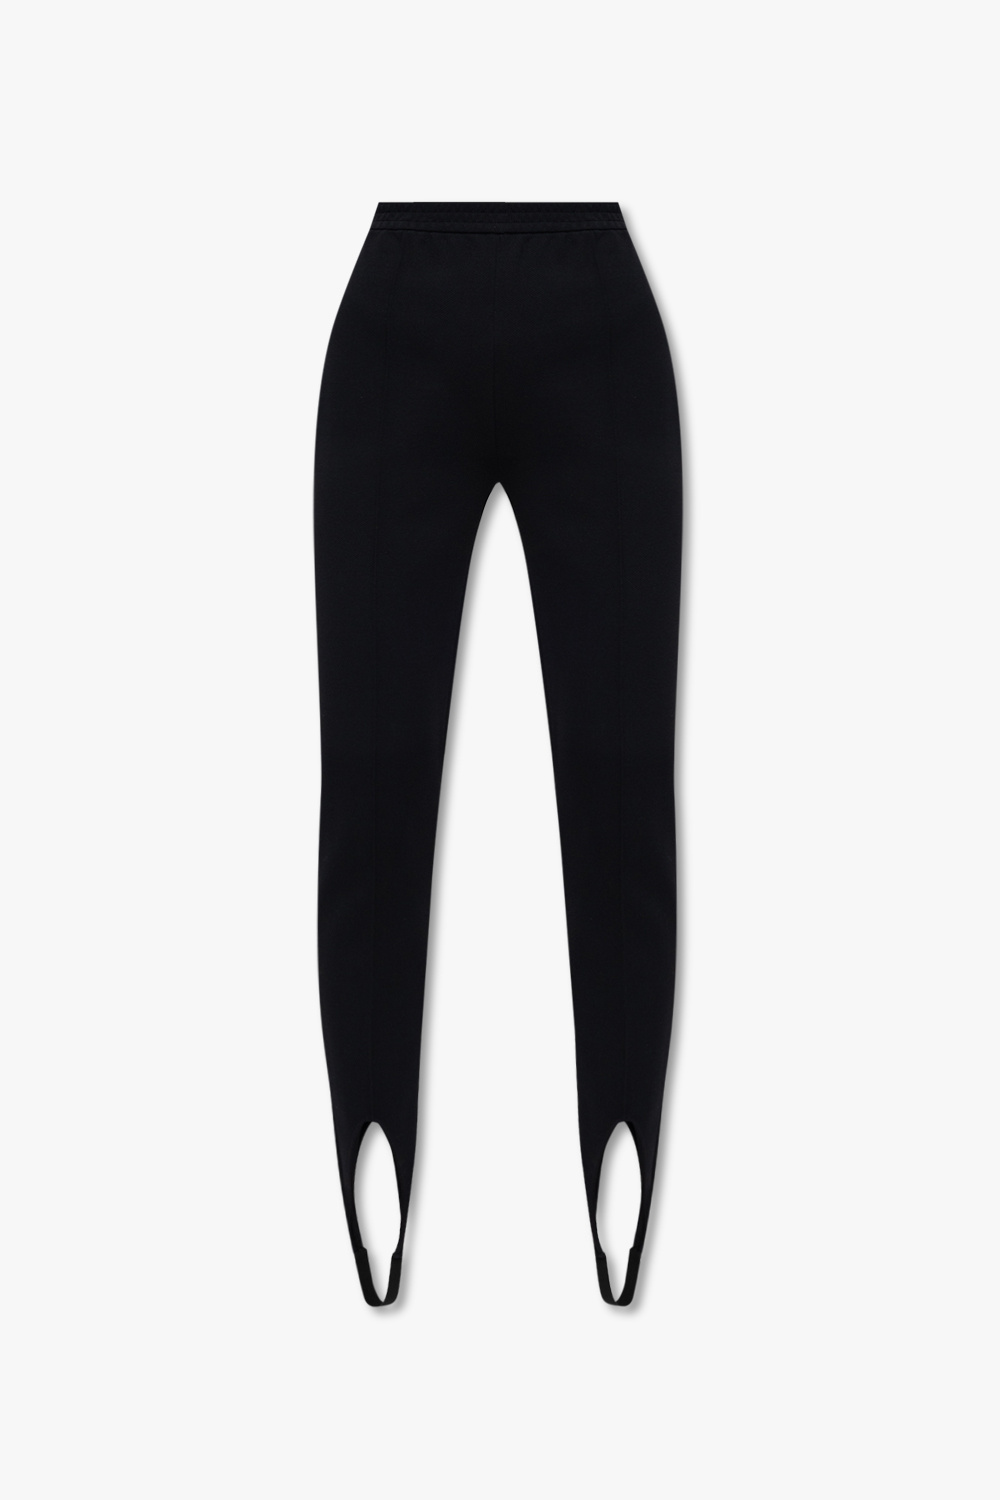 Yves Saint Laurent Pre-Owned 1980s straight skirt - Black Leggings